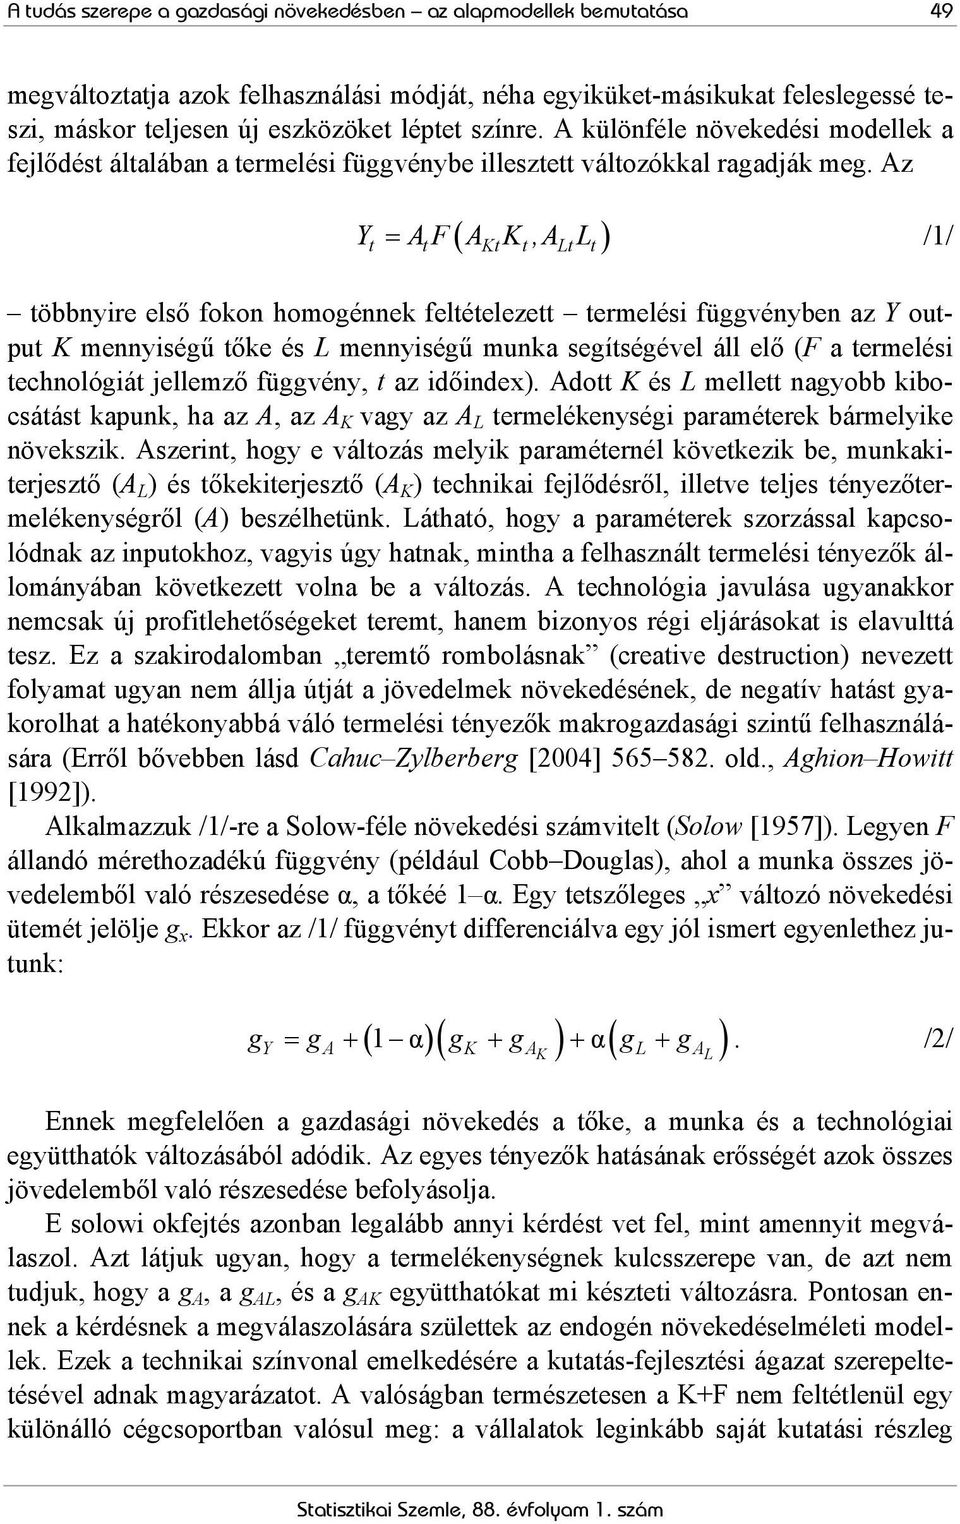 Az Y = AF A K,A L /1/ K L öbbnyire első fokon homogénnek feléeleze ermelési függvényben az Y oupu K mennyiségű őke és L mennyiségű munka segíségével áll elő (F a ermelési echnológiá jellemző